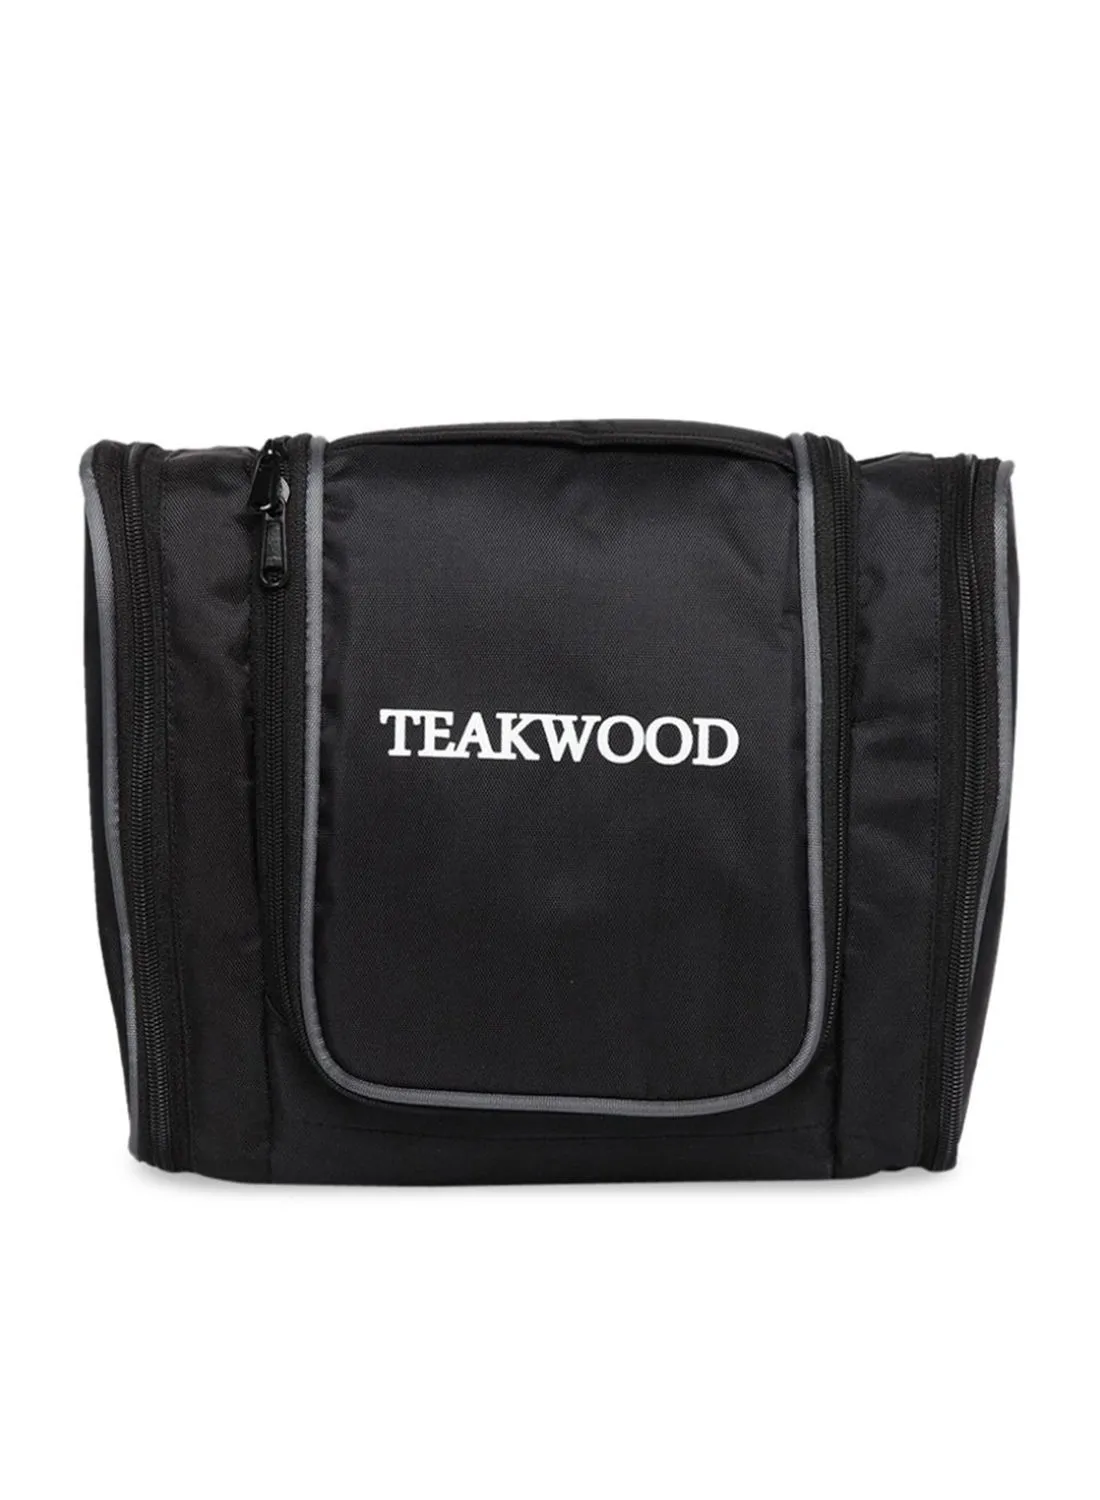 TEAKWOOD Logo Detail Toiletry Bag Black